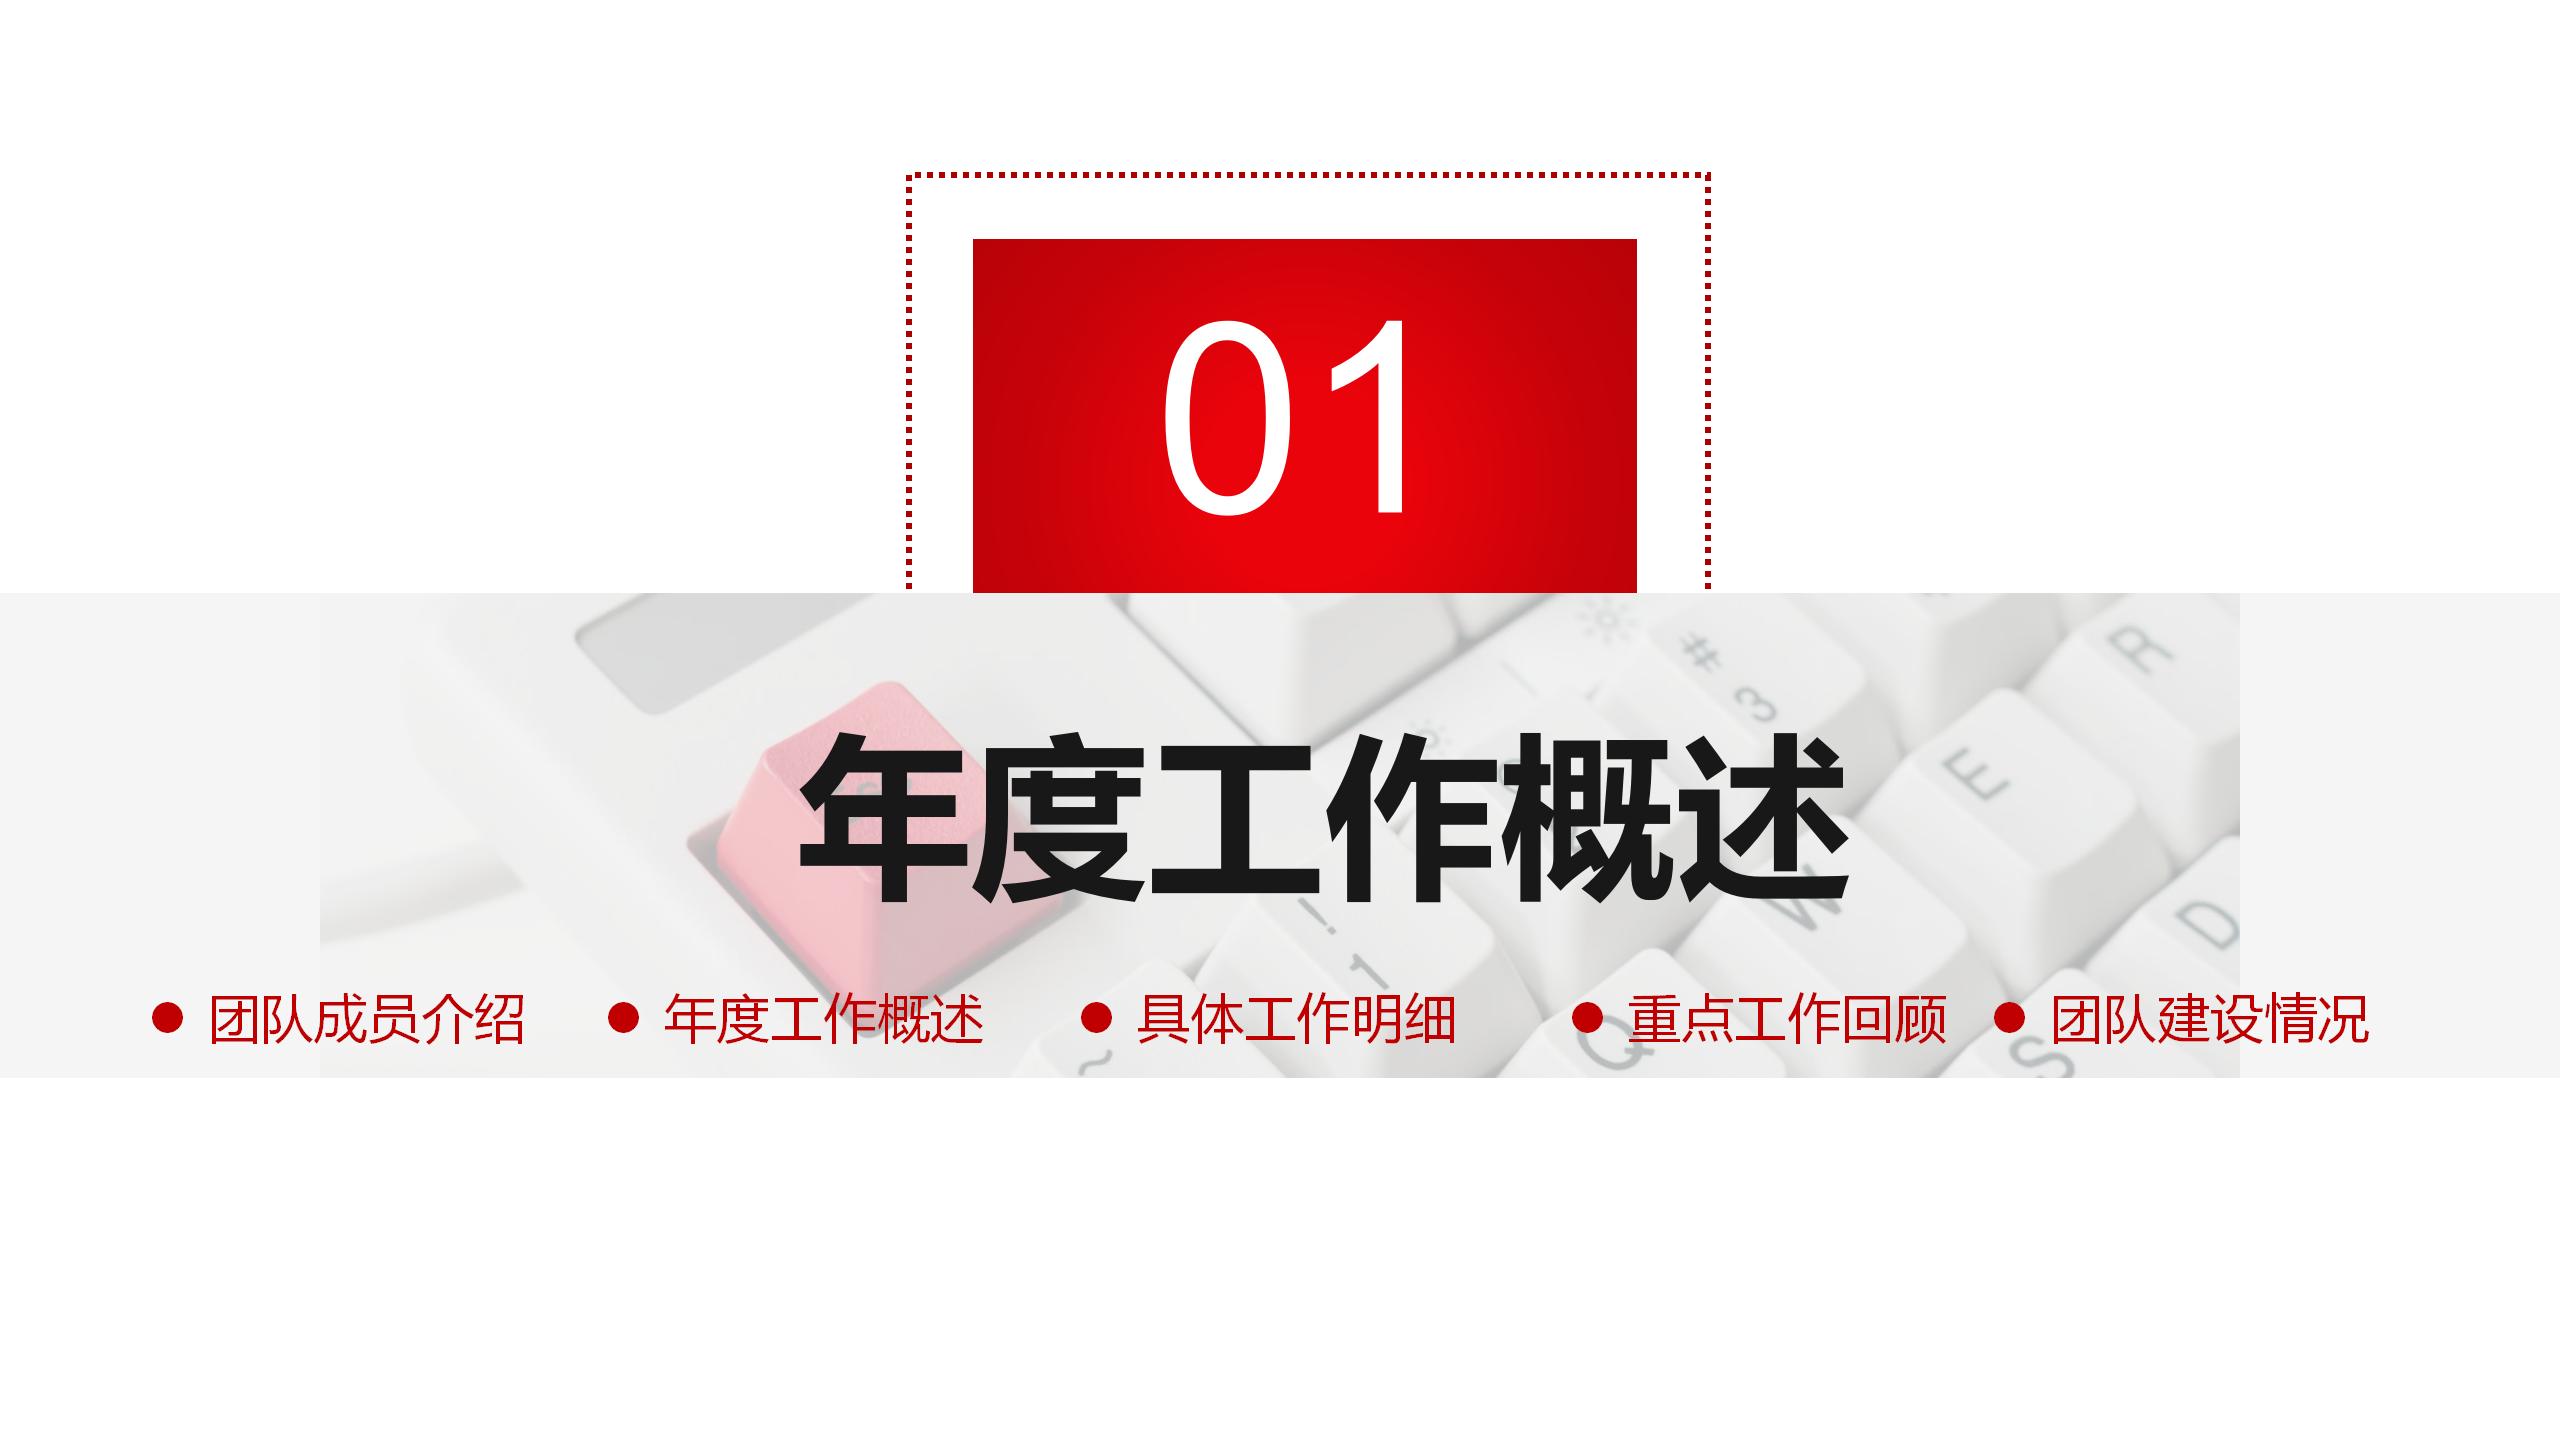 2019红色大气简约公司述职报告动态PPT模板_04.jpg